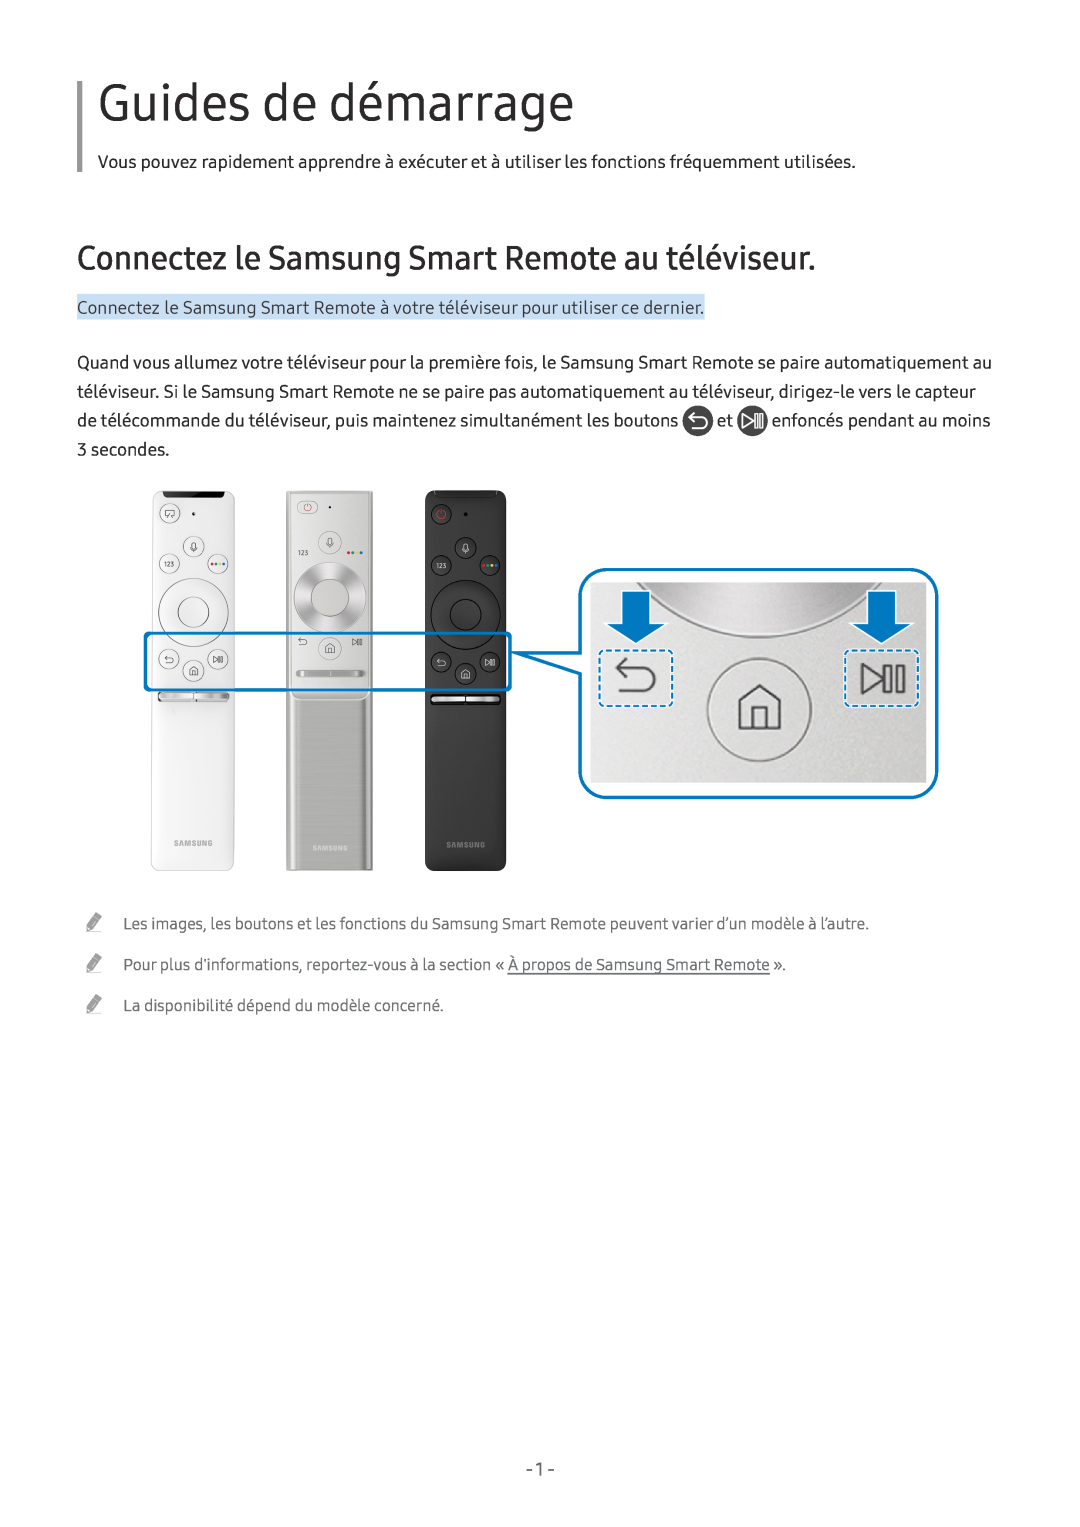 Samsung UE65MU7045TXXC, UE40MU6455UXXC, QE75Q7FAMTXXC Guides de démarrage, Connectez le Samsung Smart Remote au téléviseur 